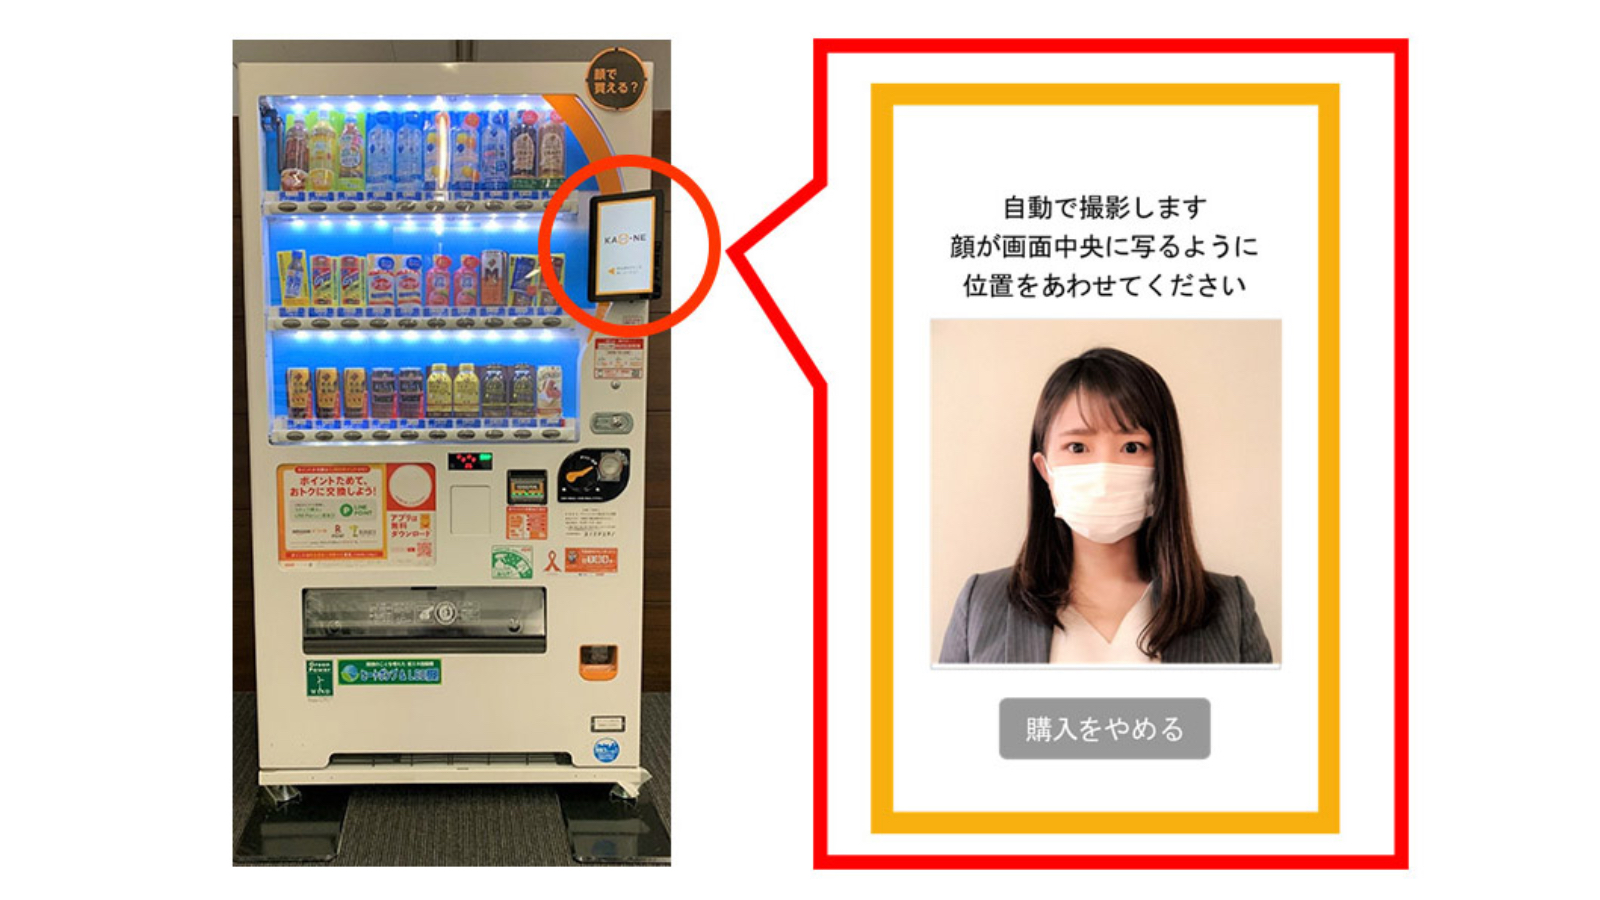 Der Getränkeautomat mit Gesichtserkennung von DyDo.